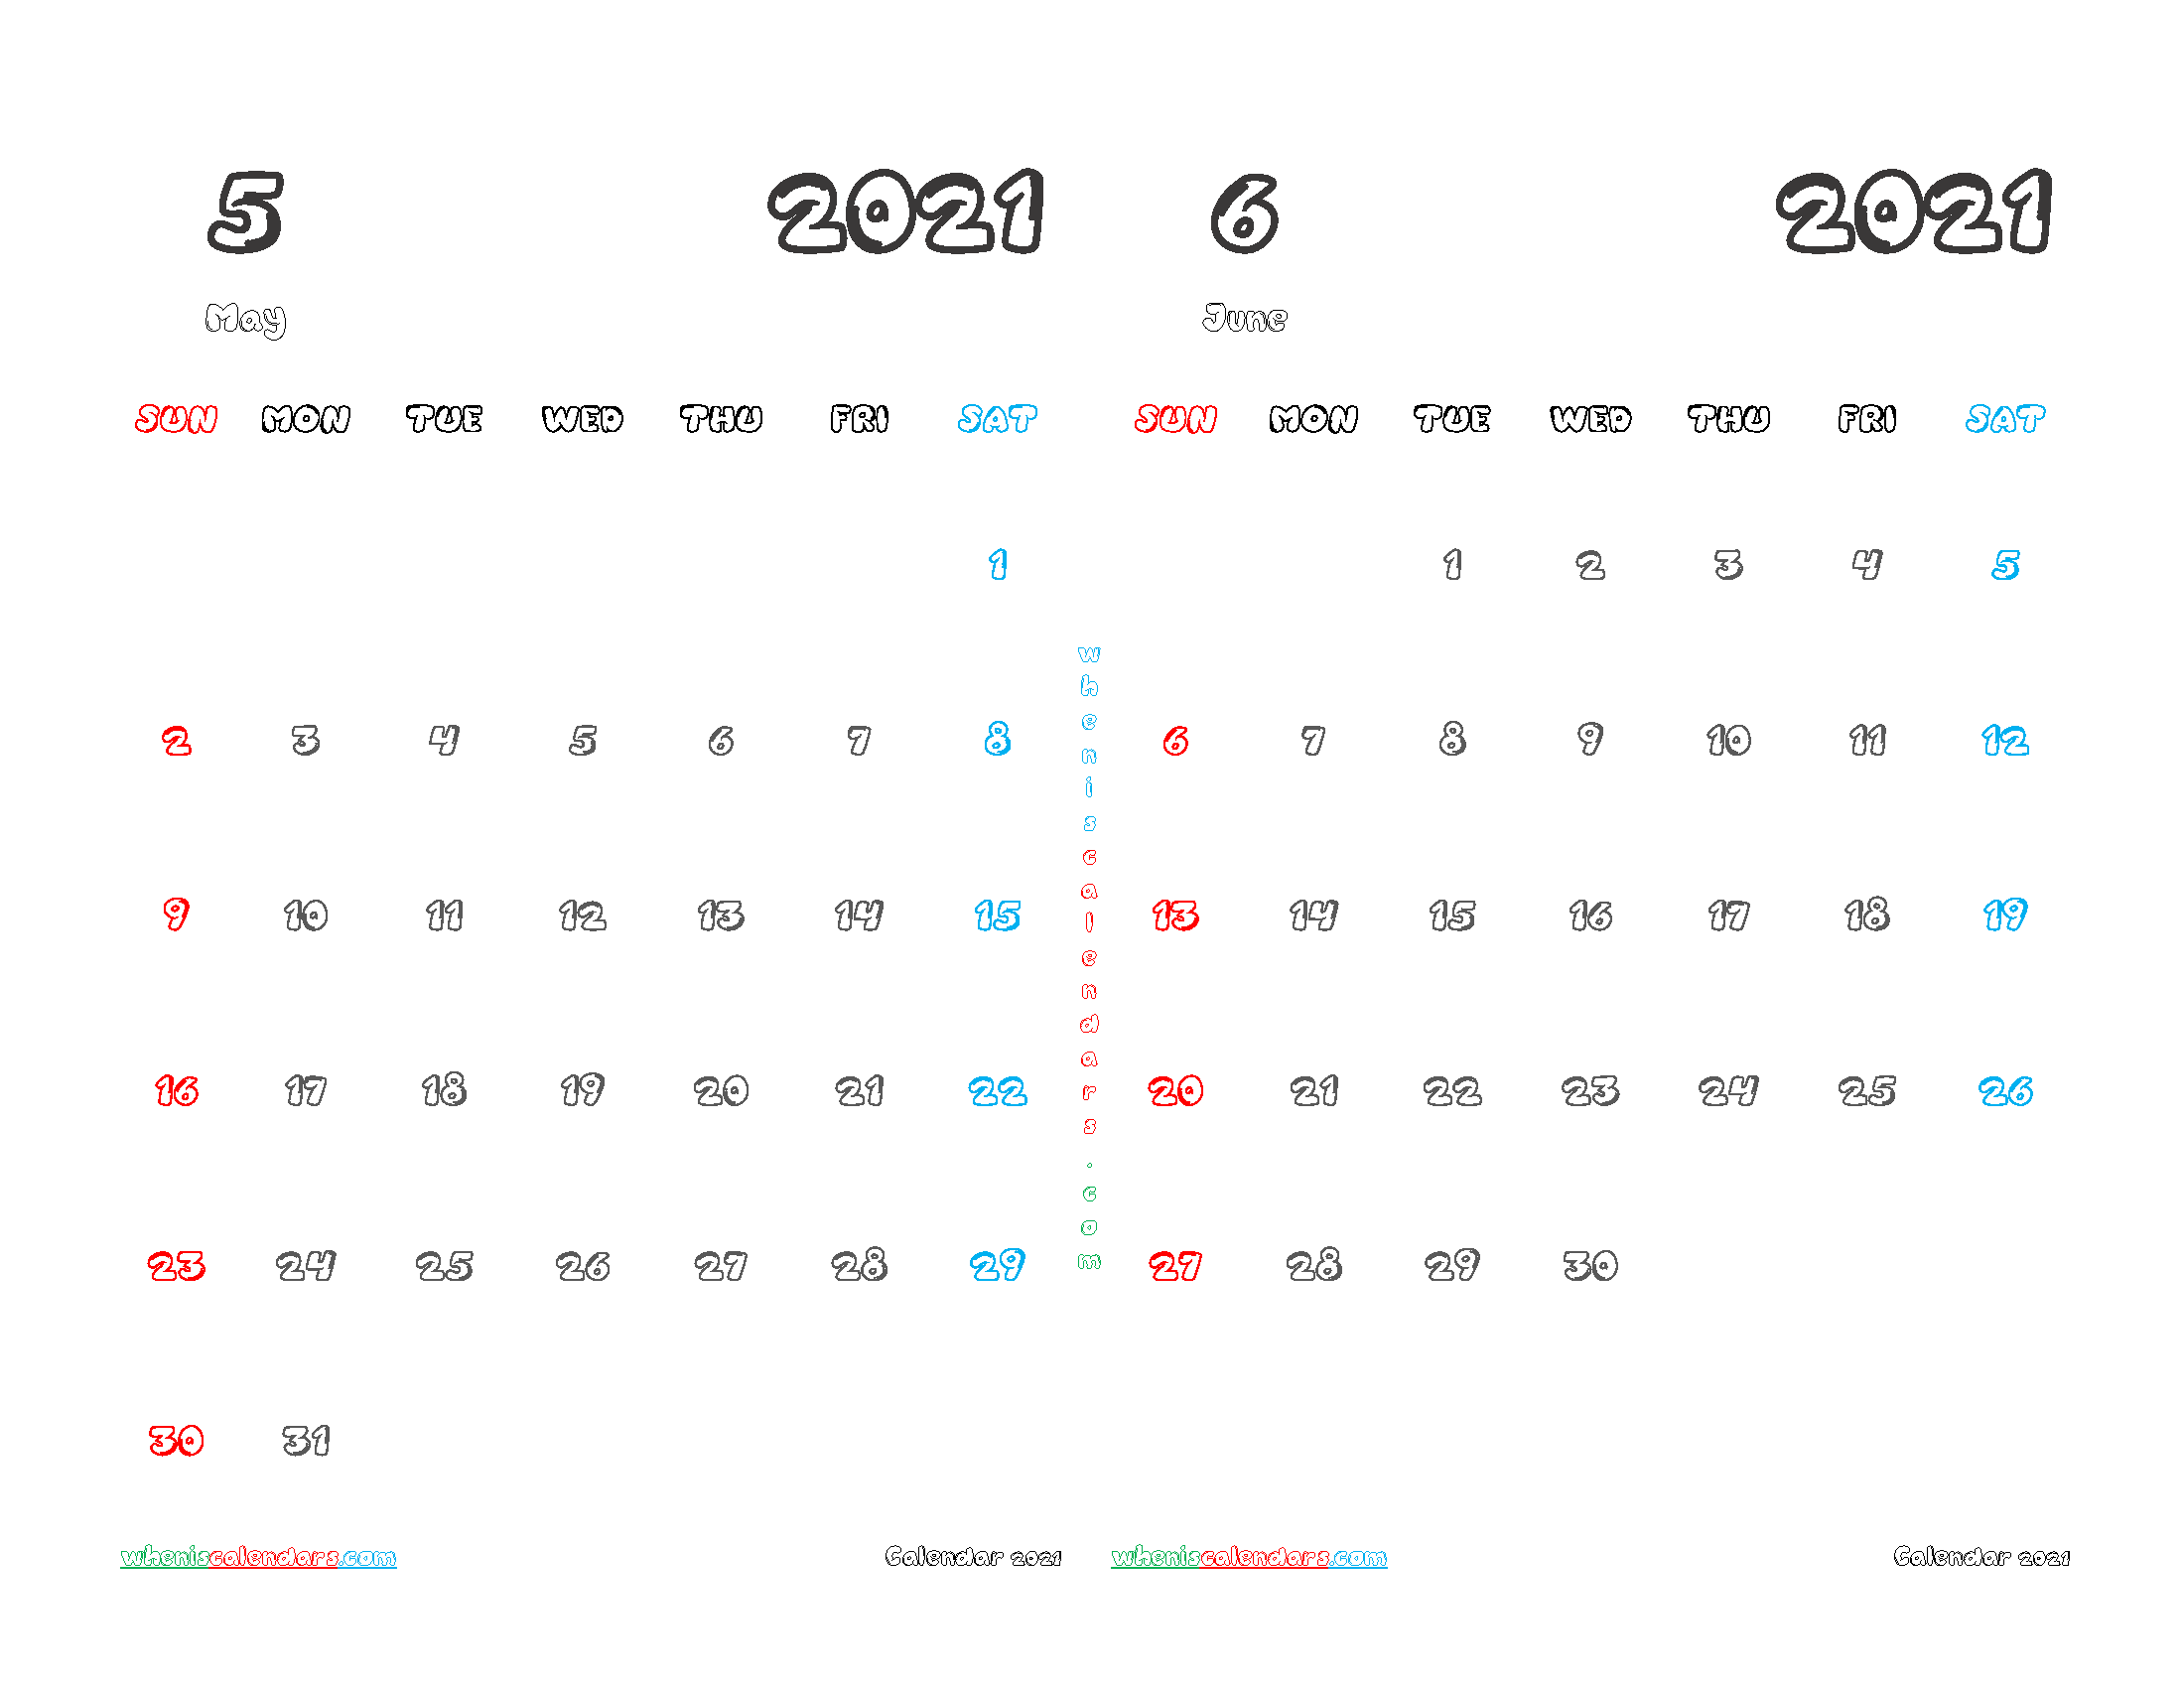 Calendar for May June 2021